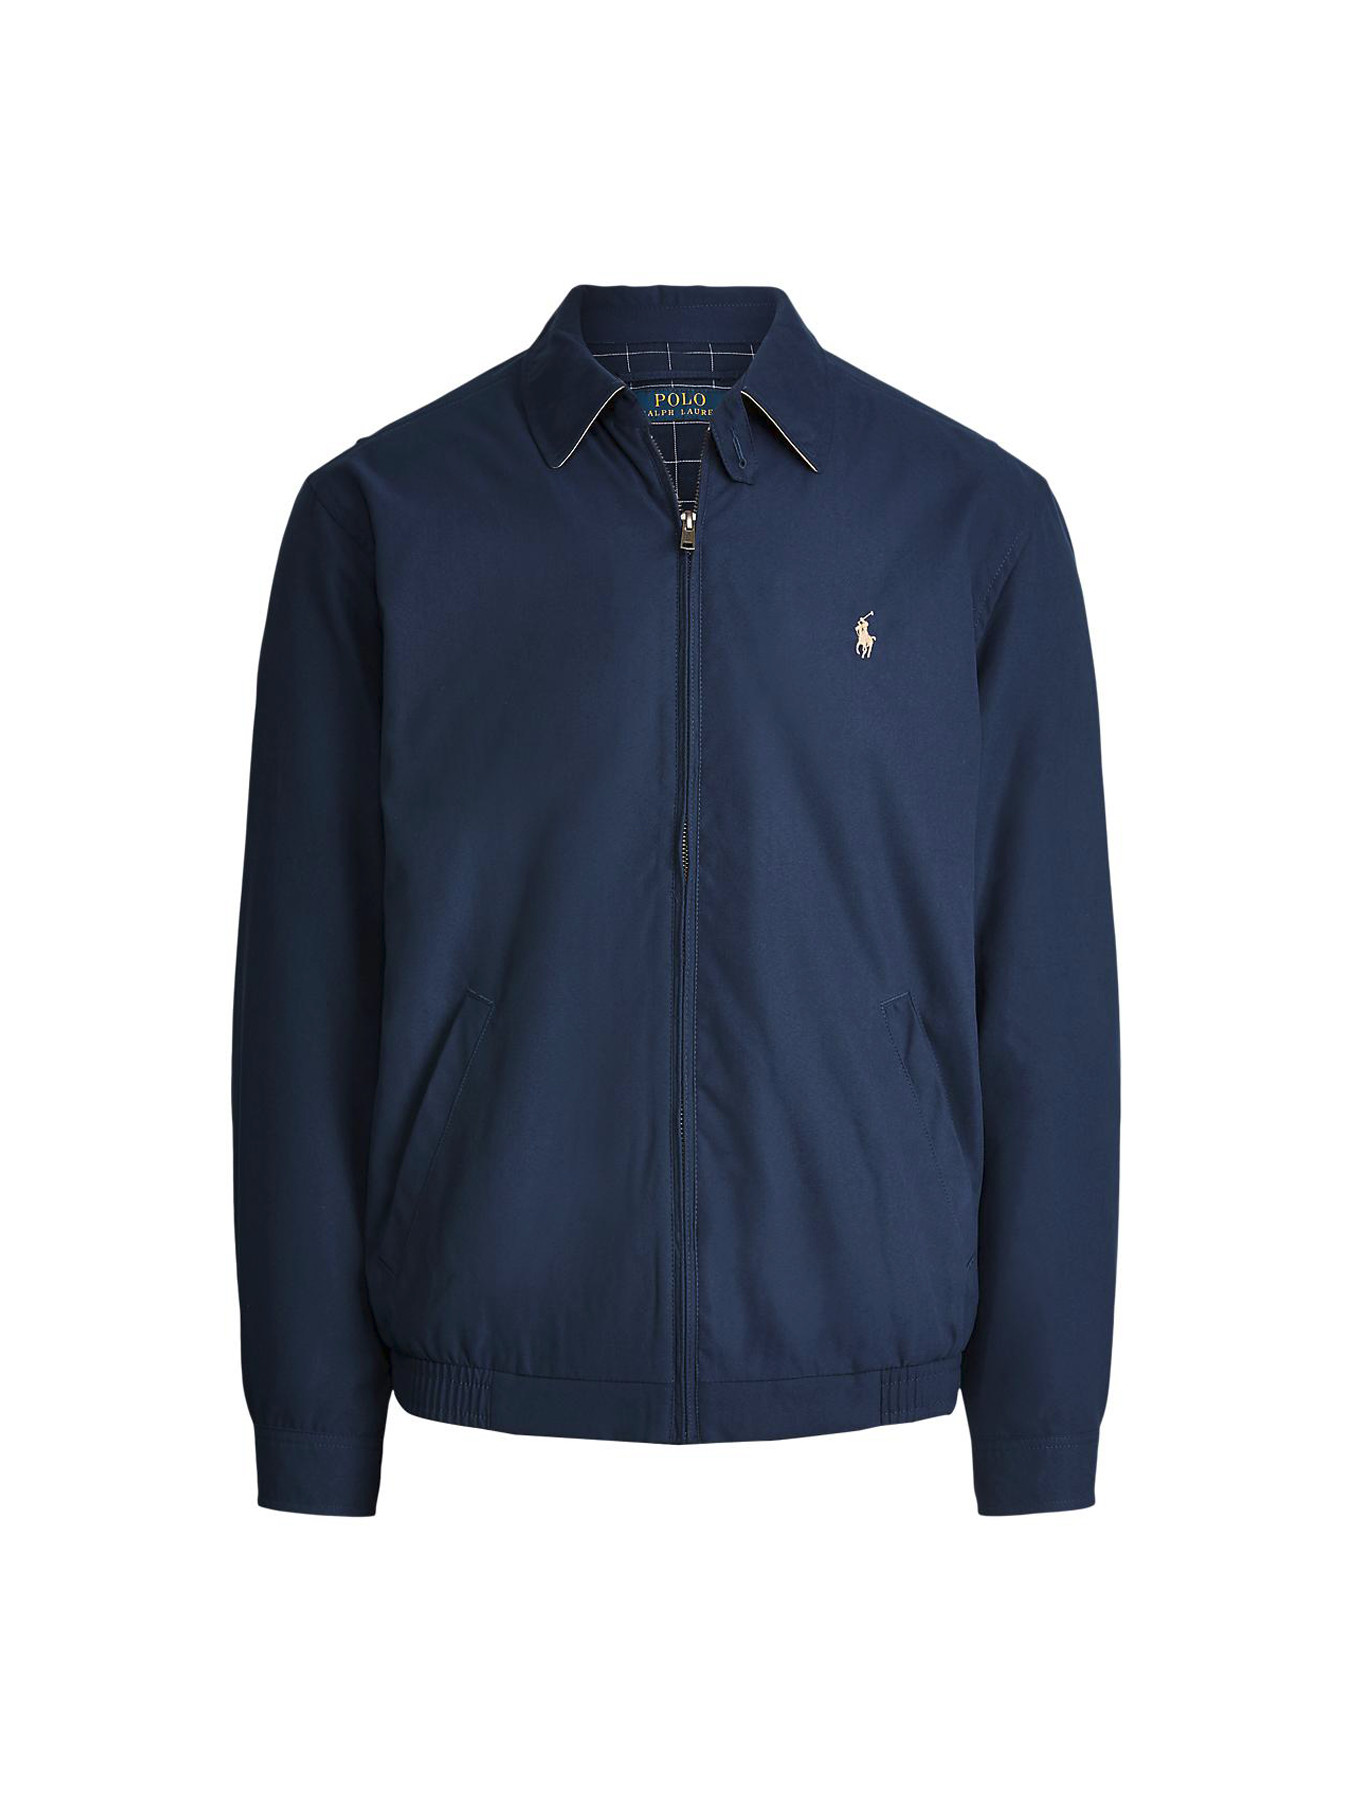 Polo Ralph Lauren Windbreaker Jacket | Lightweight Jackets | Fenwick